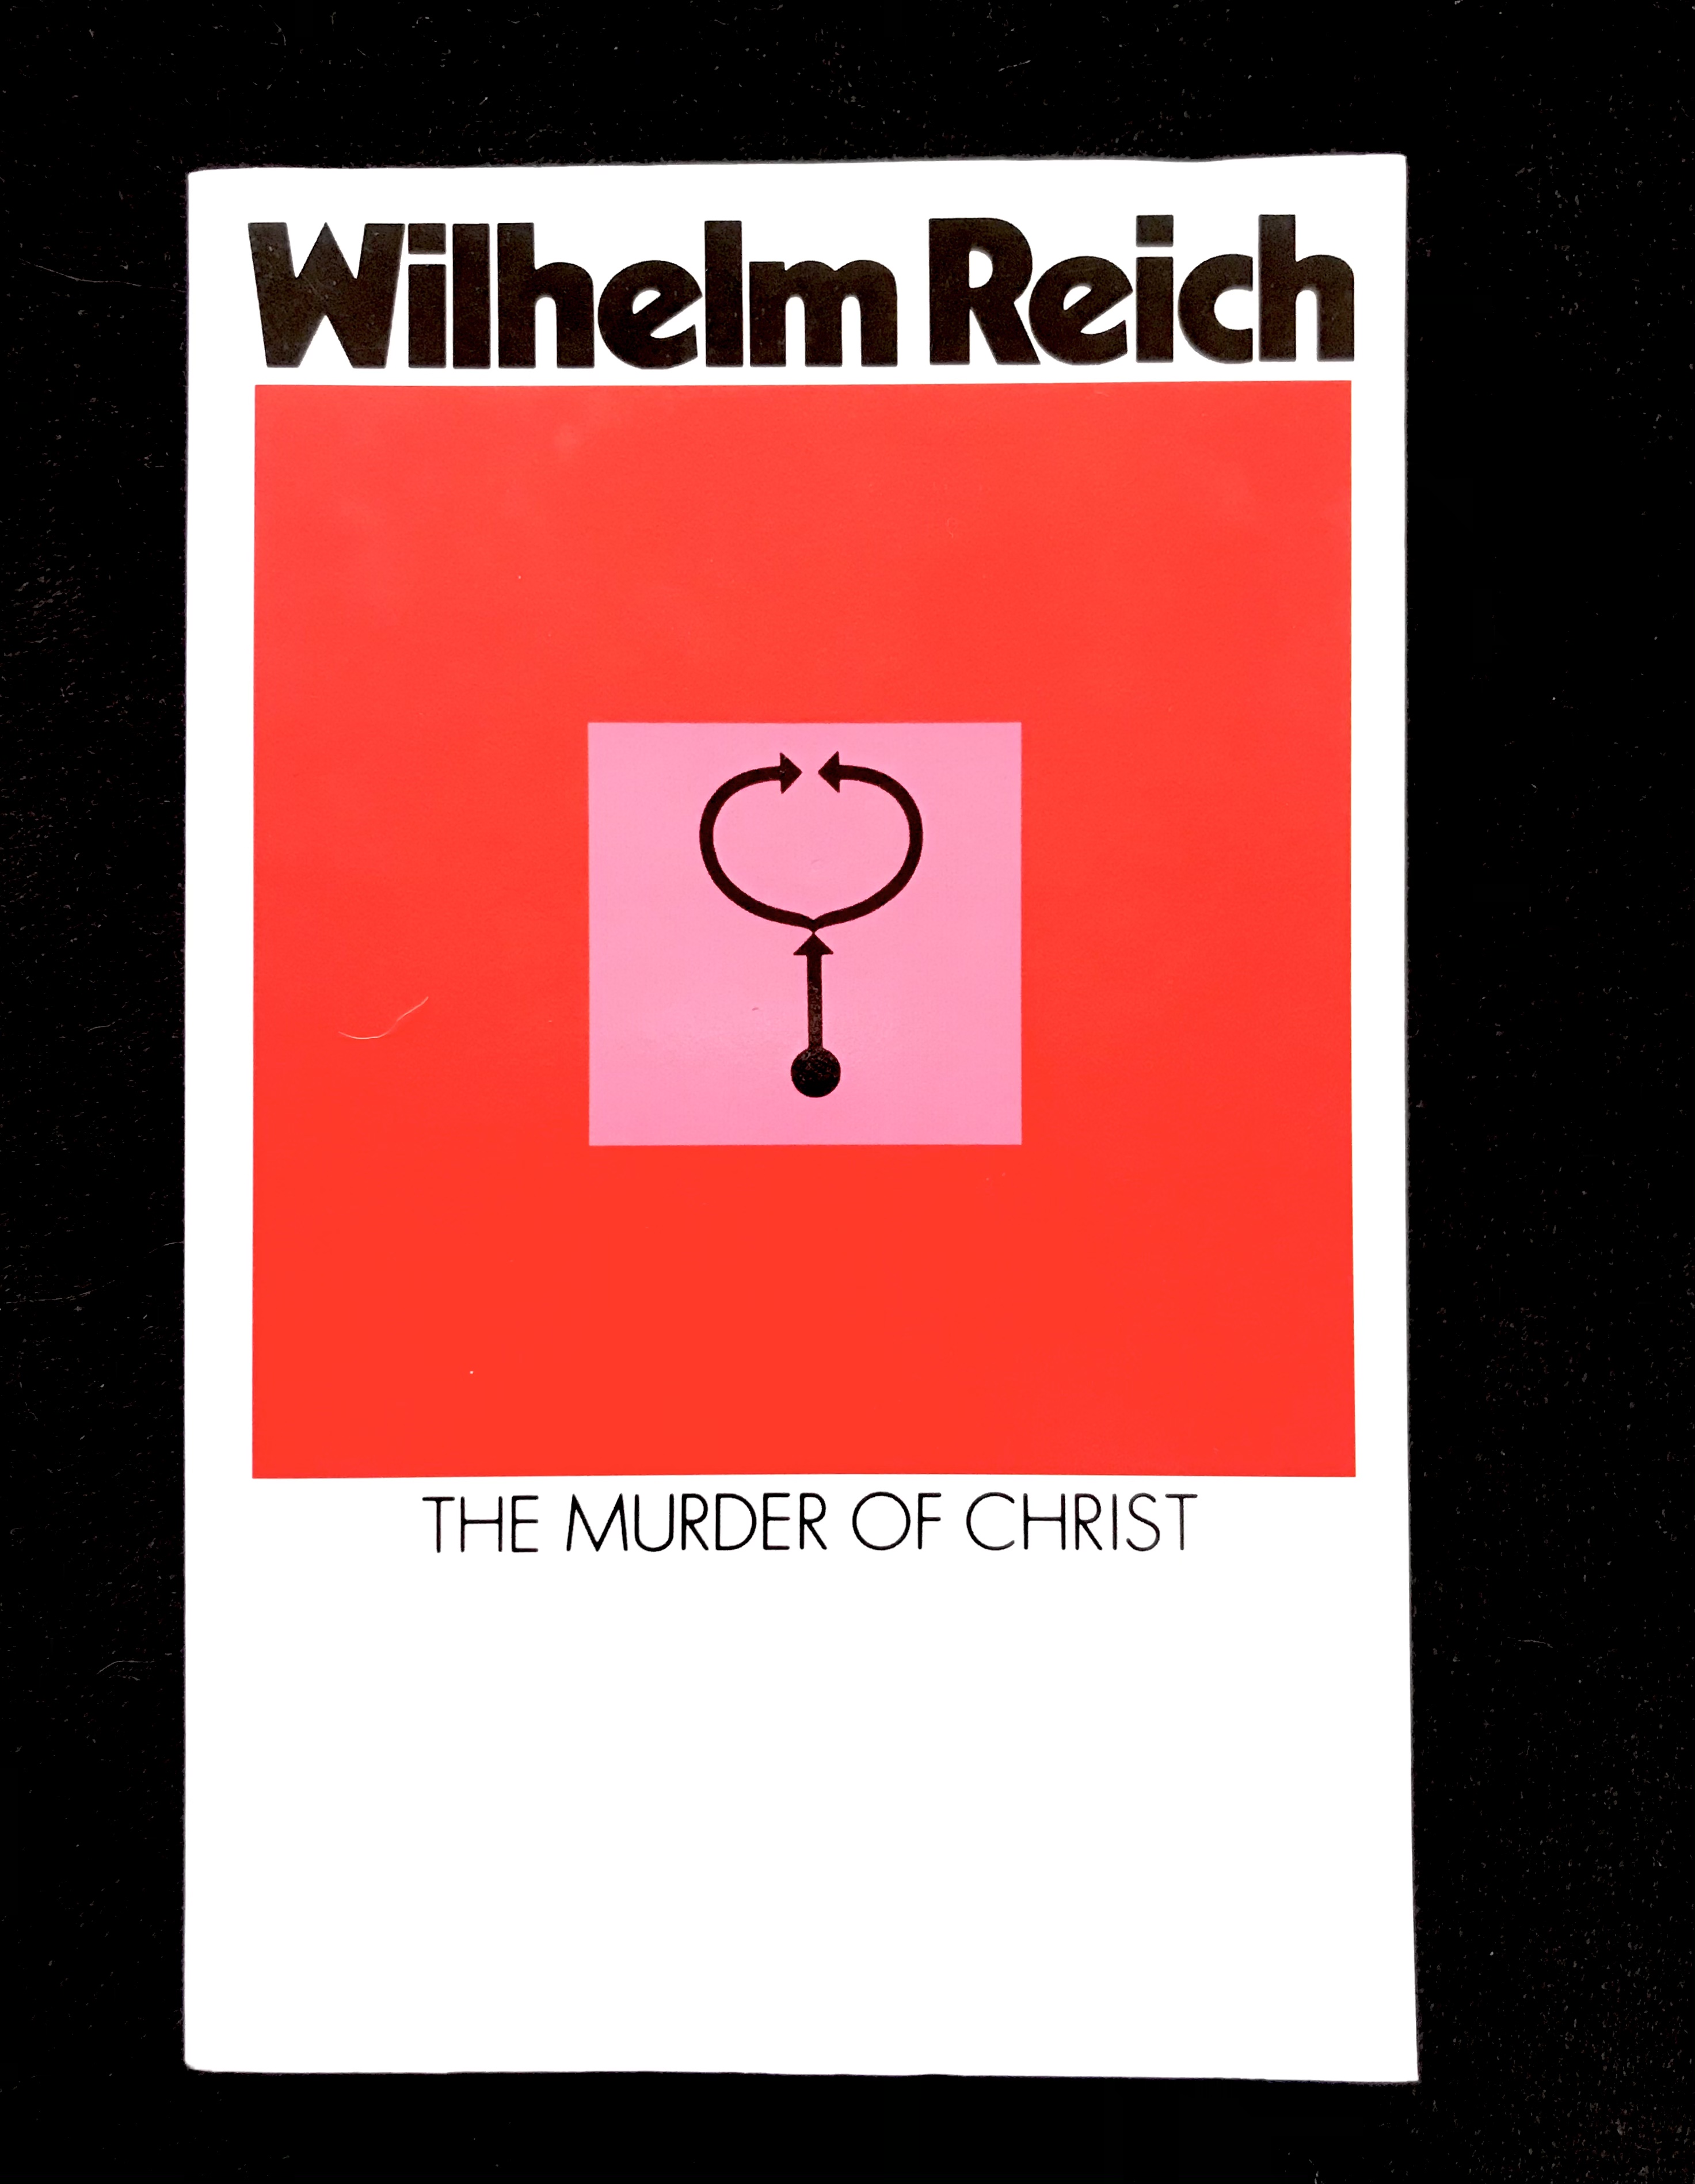 The Murder of Christ by Wilhelm Reich